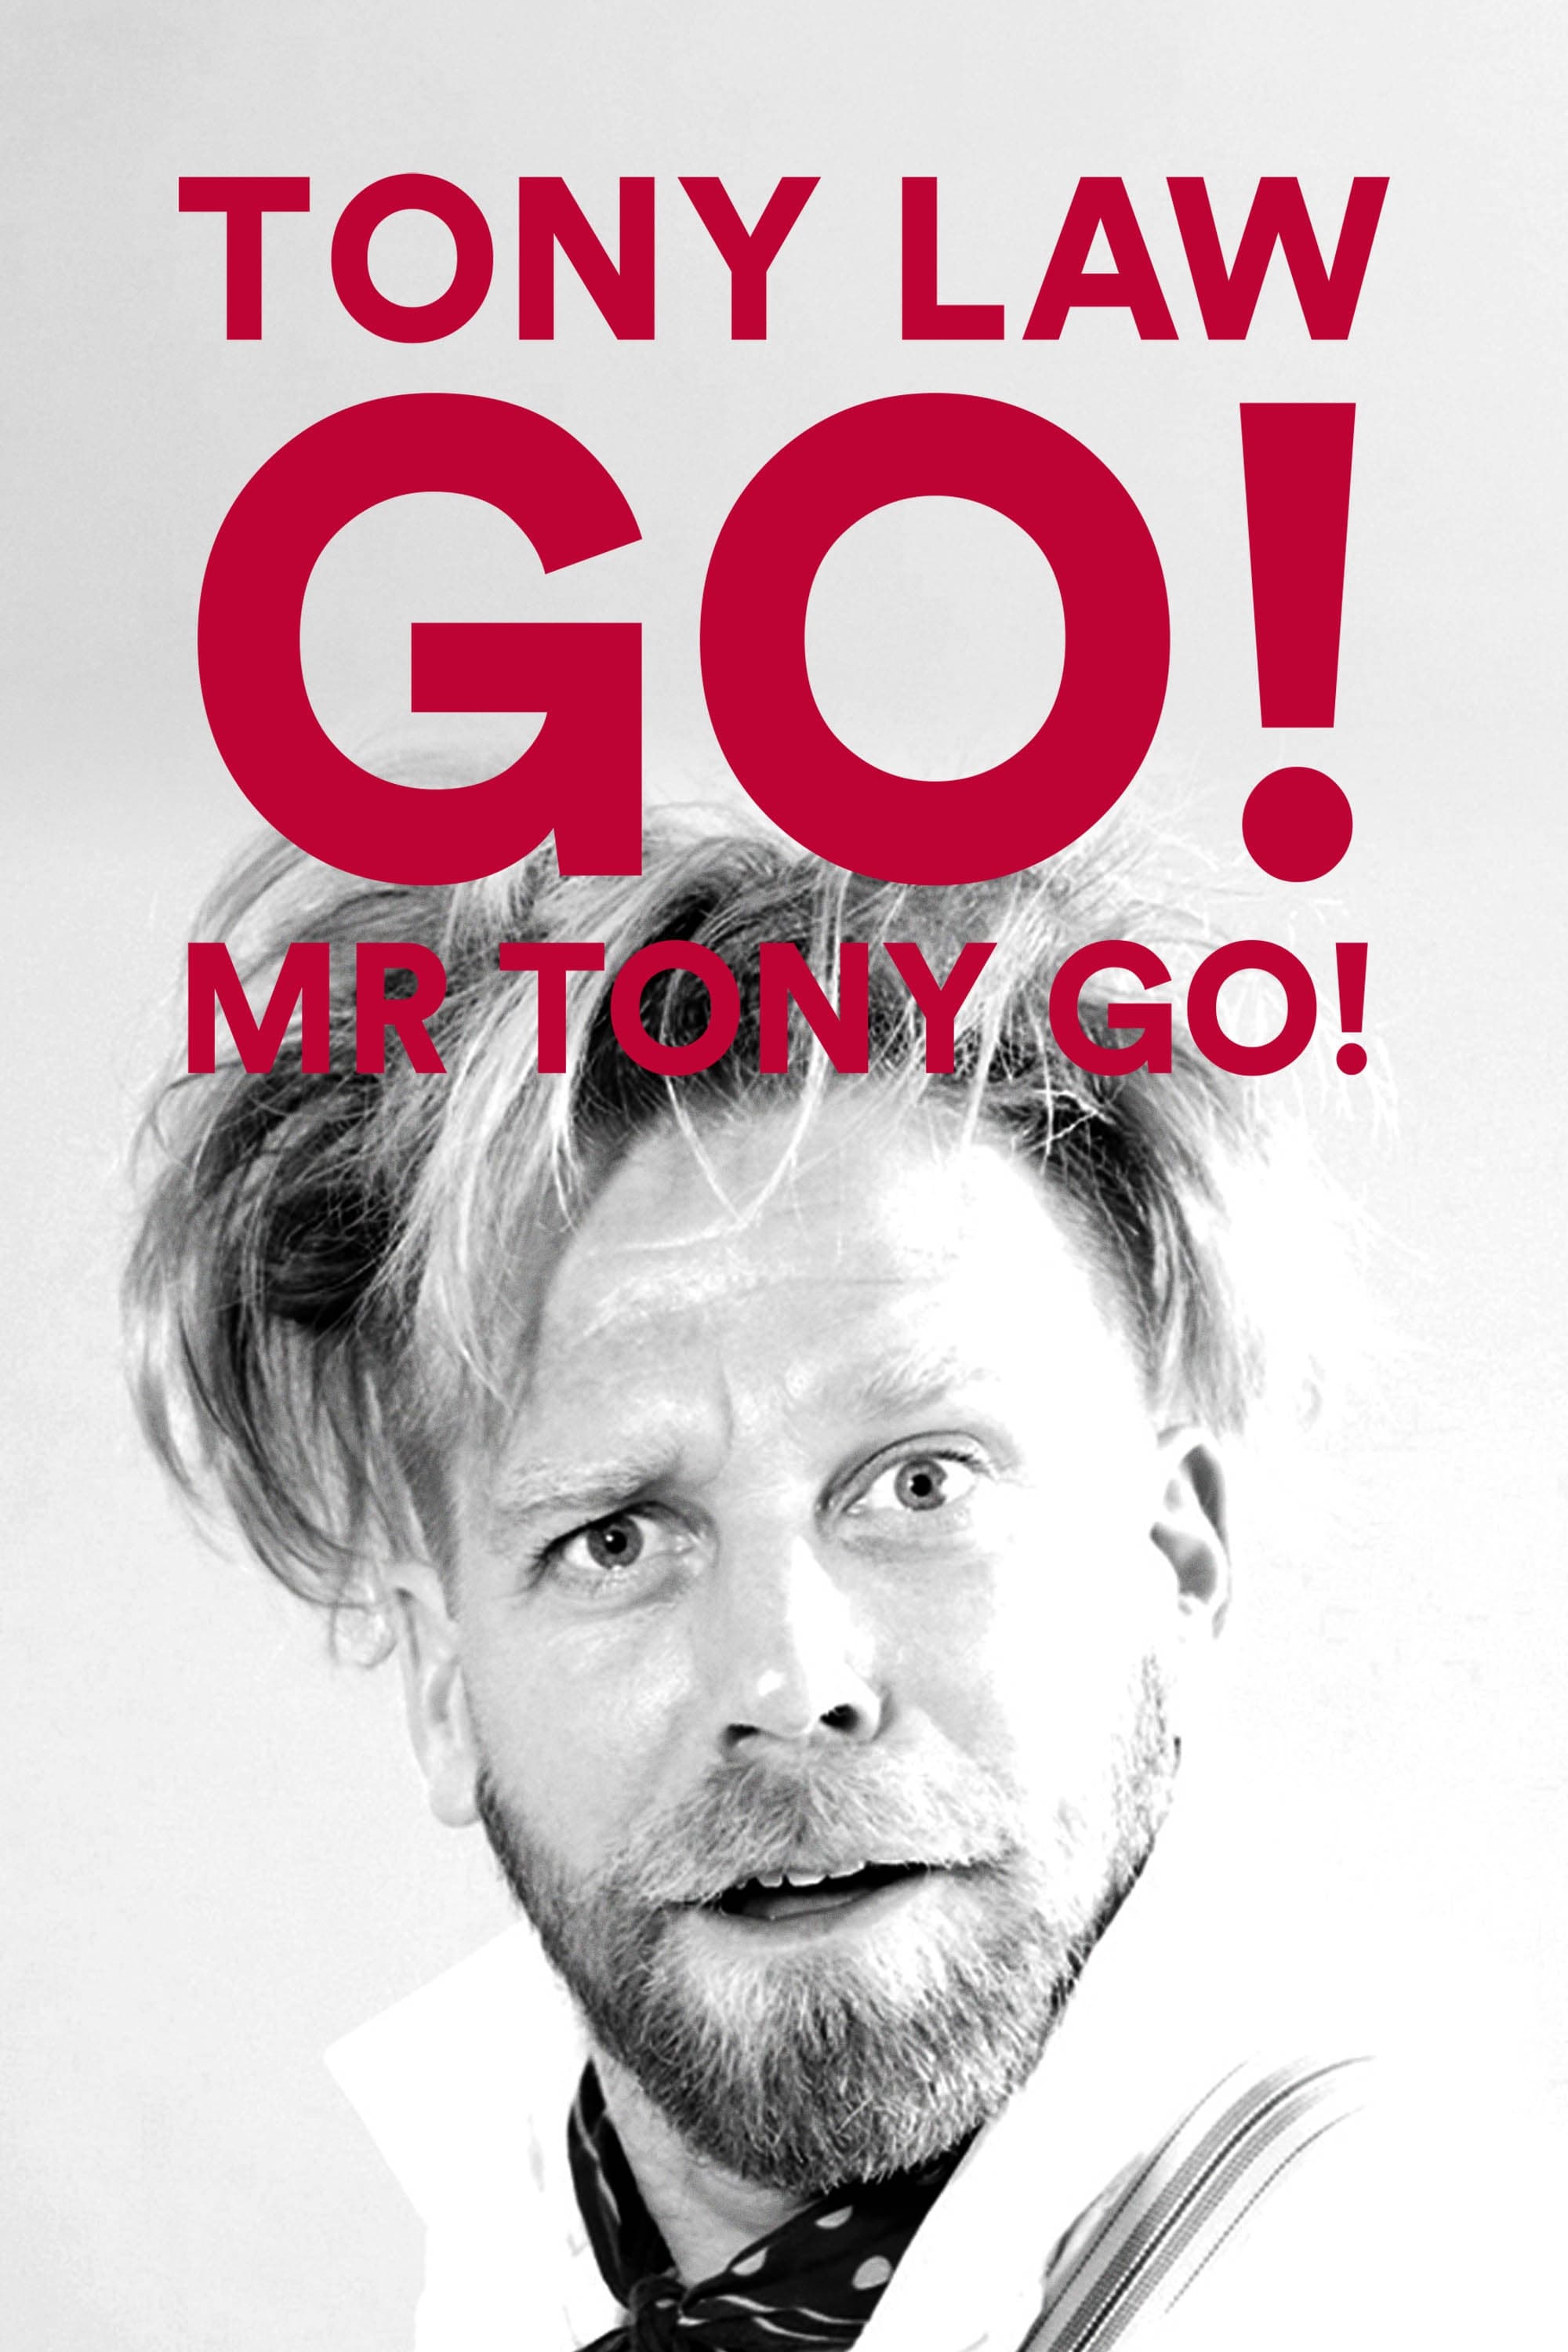 Tony Law: Go! Mr Tony Go!